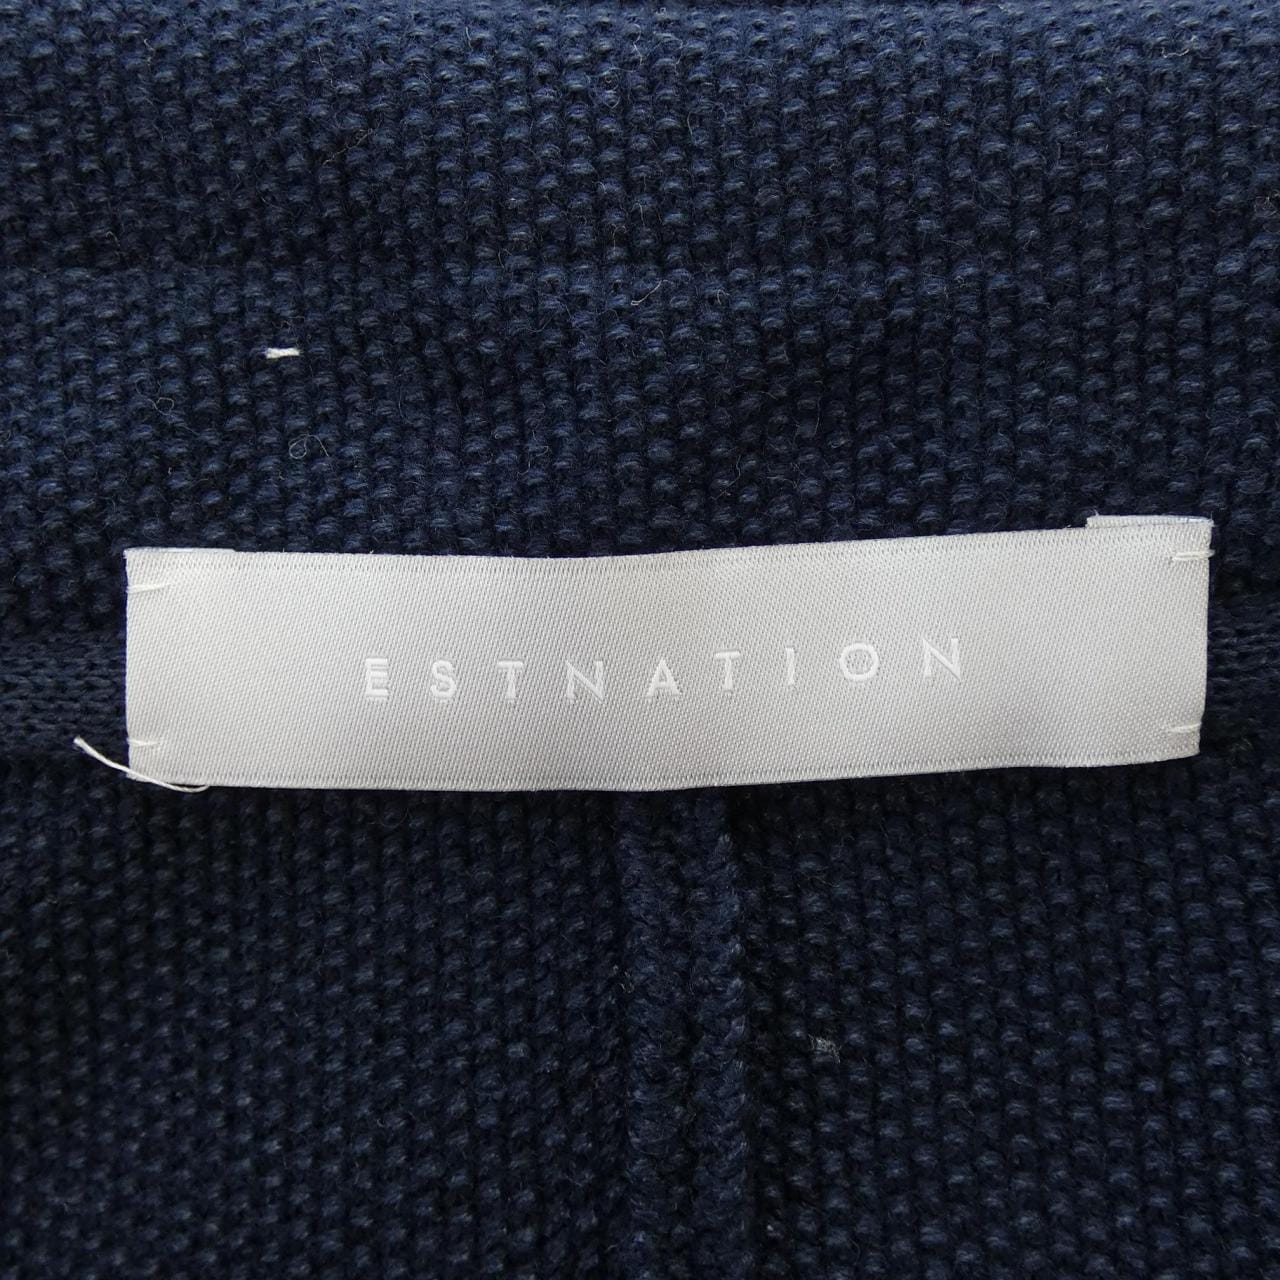 ESTNATION ESTNATION jacket